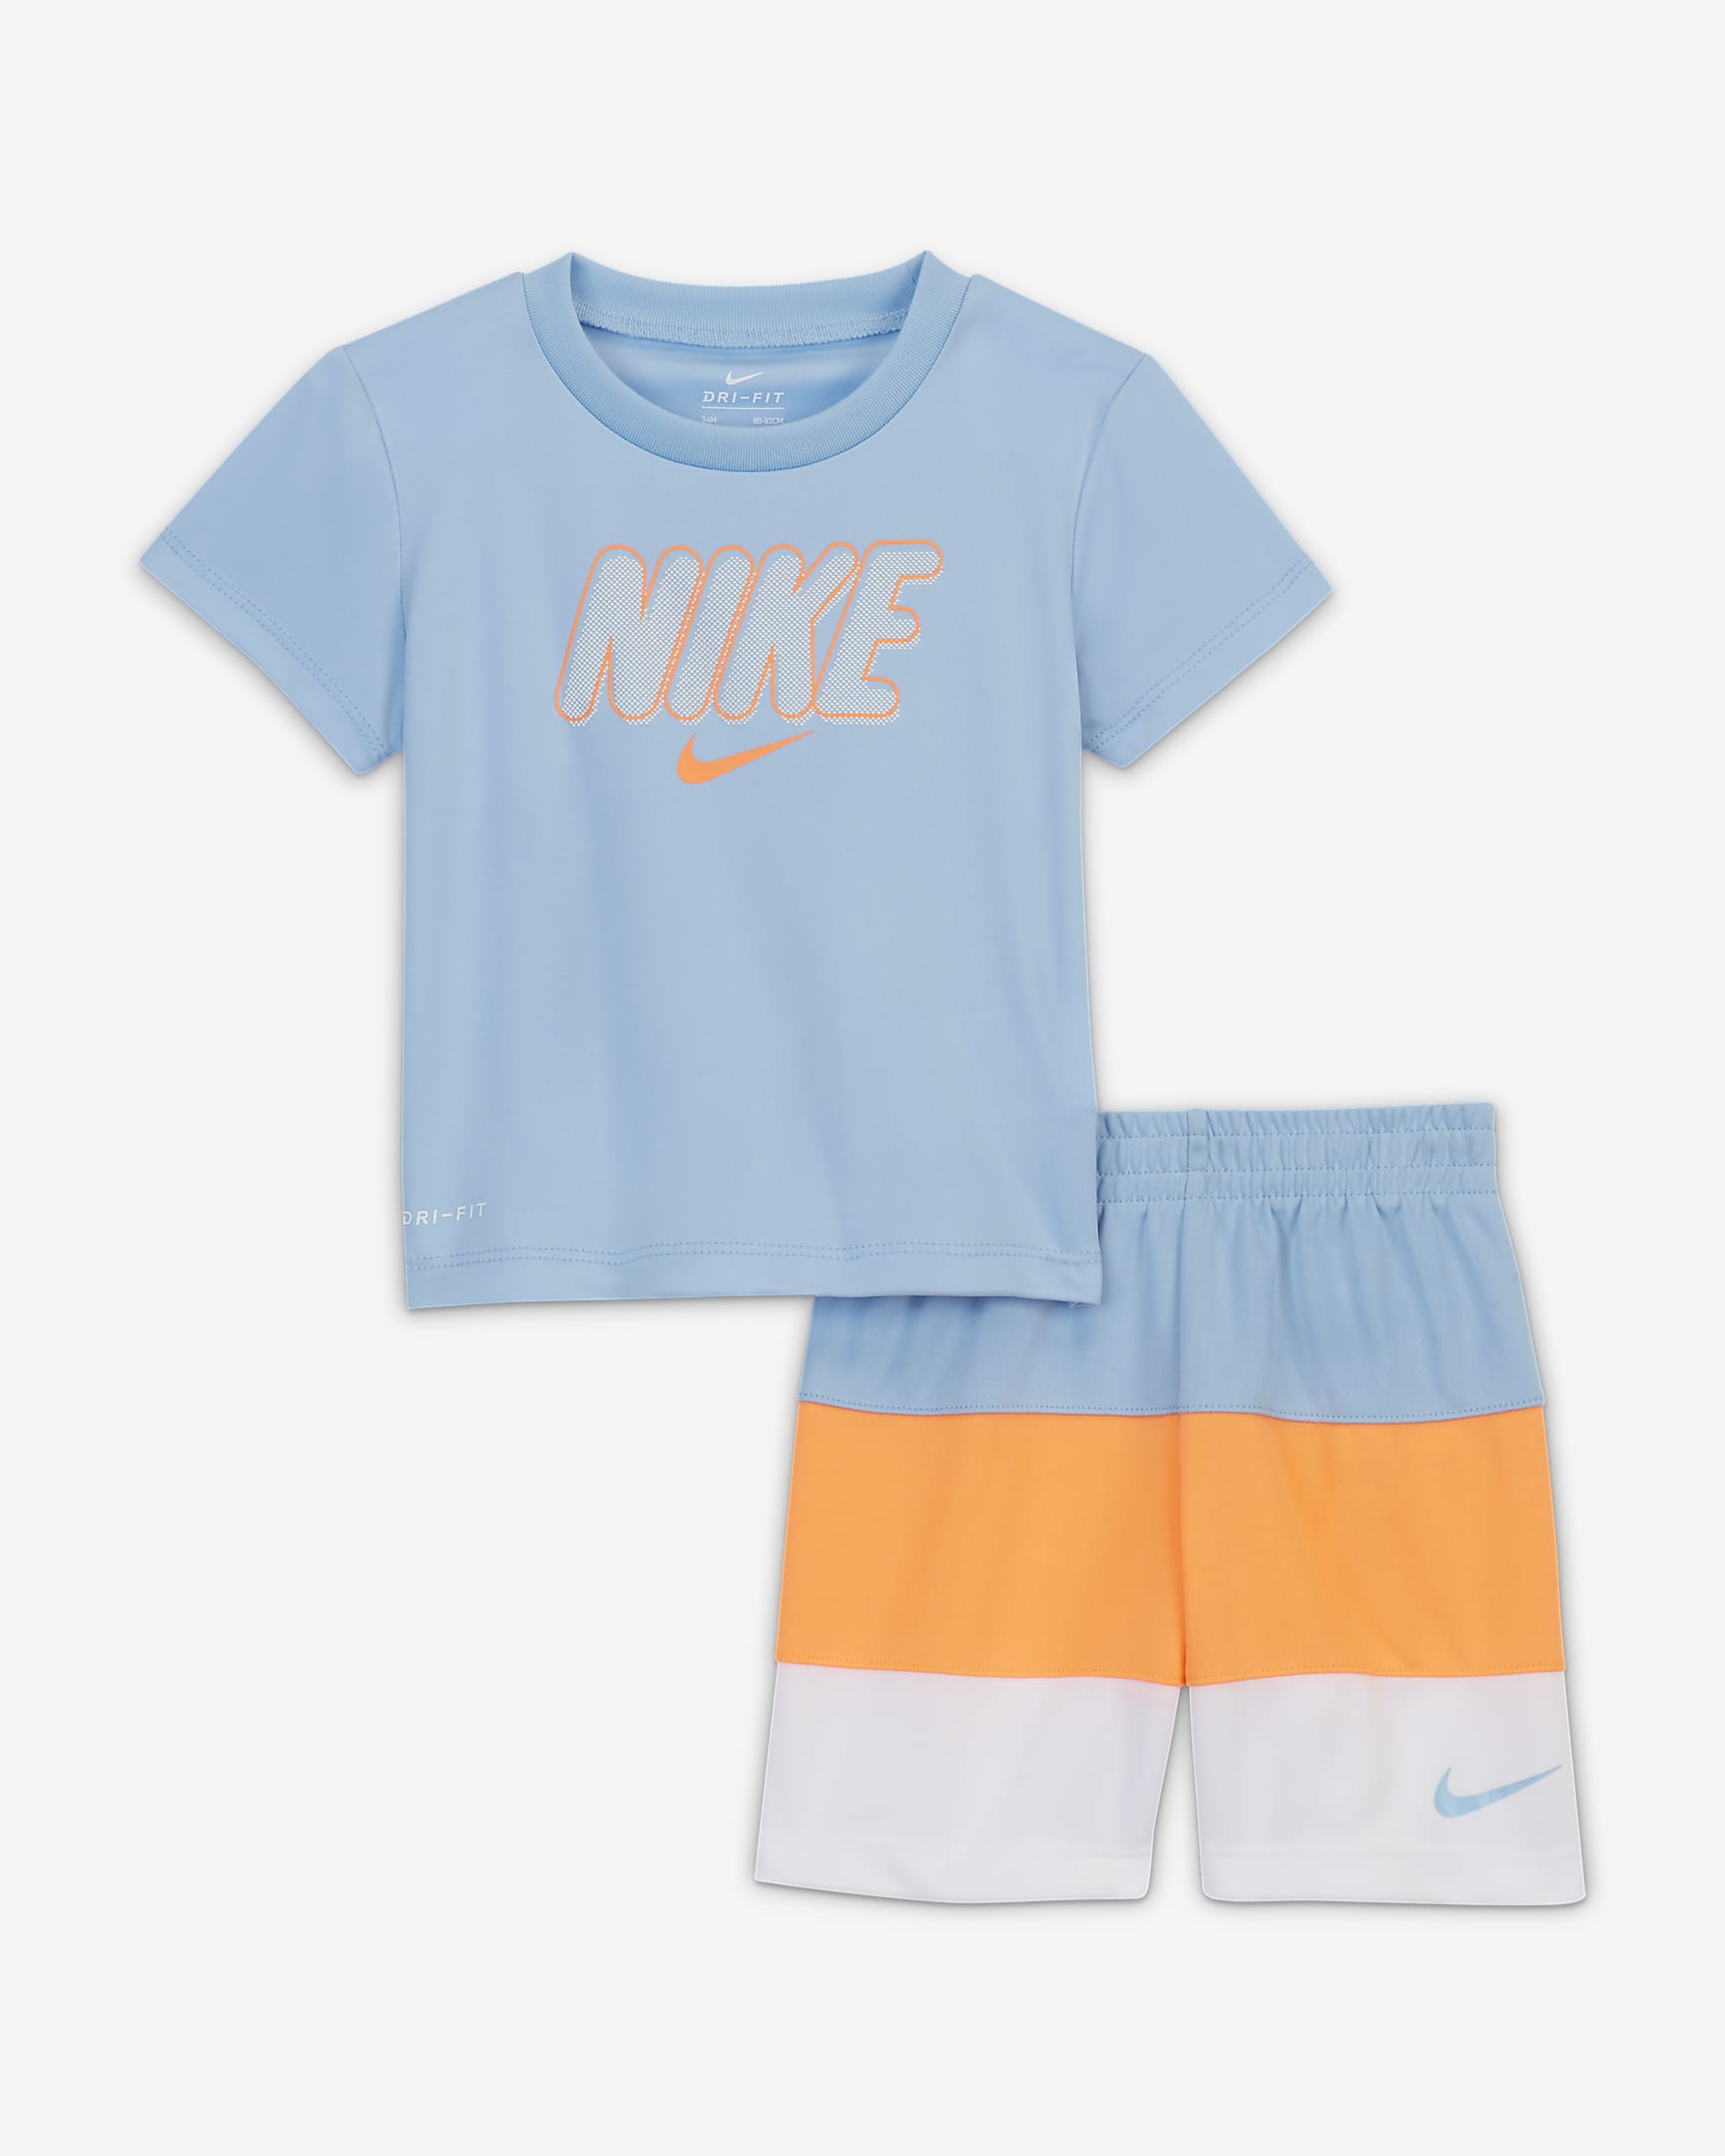 Conjunto de playera y shorts para bebé Nike (12 a 24 meses). Nike.com